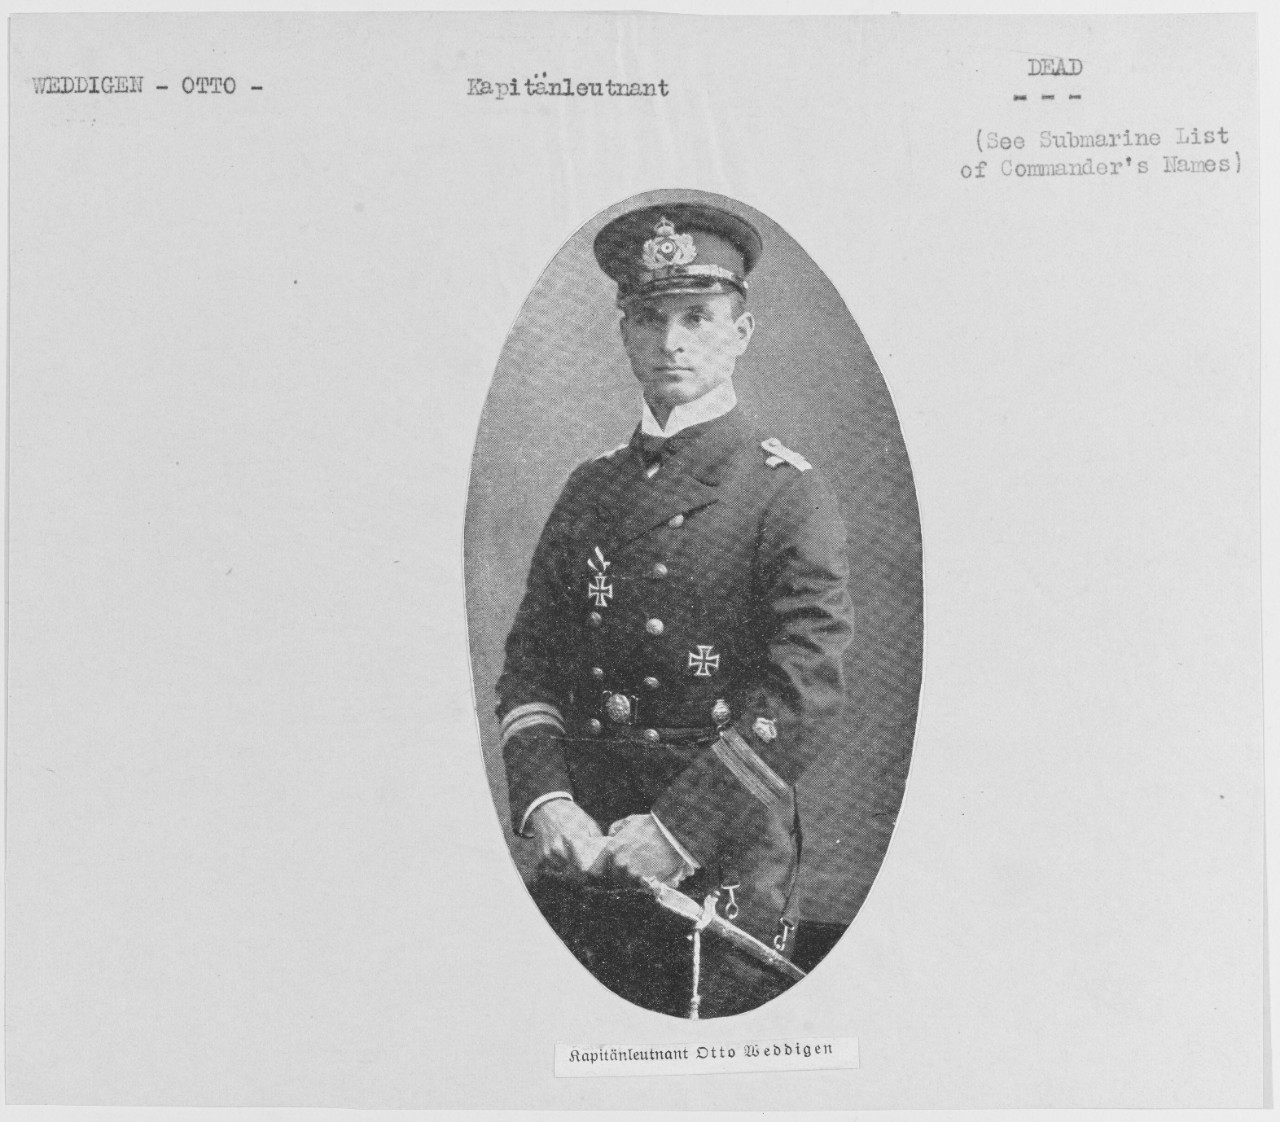 Otto, Weddigen, German Submarine Commander 